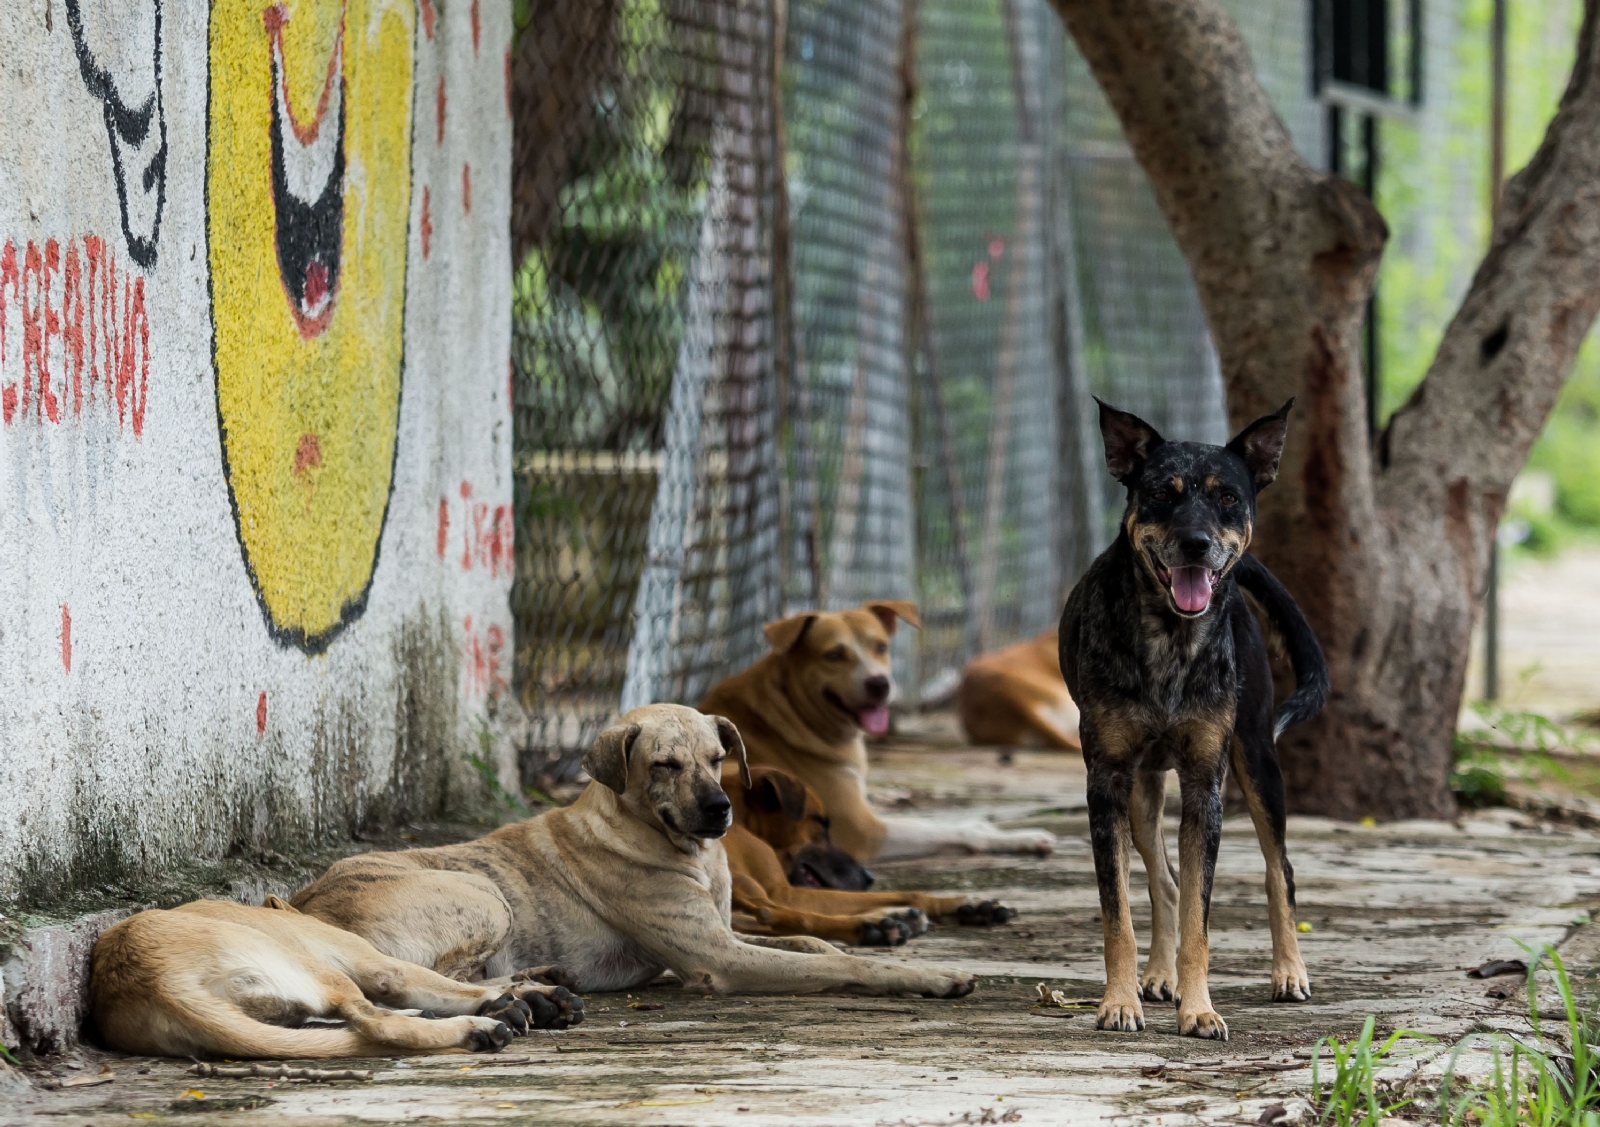 Perros callejeros devoran a recién nacido abandonado en la basura en Venezuela